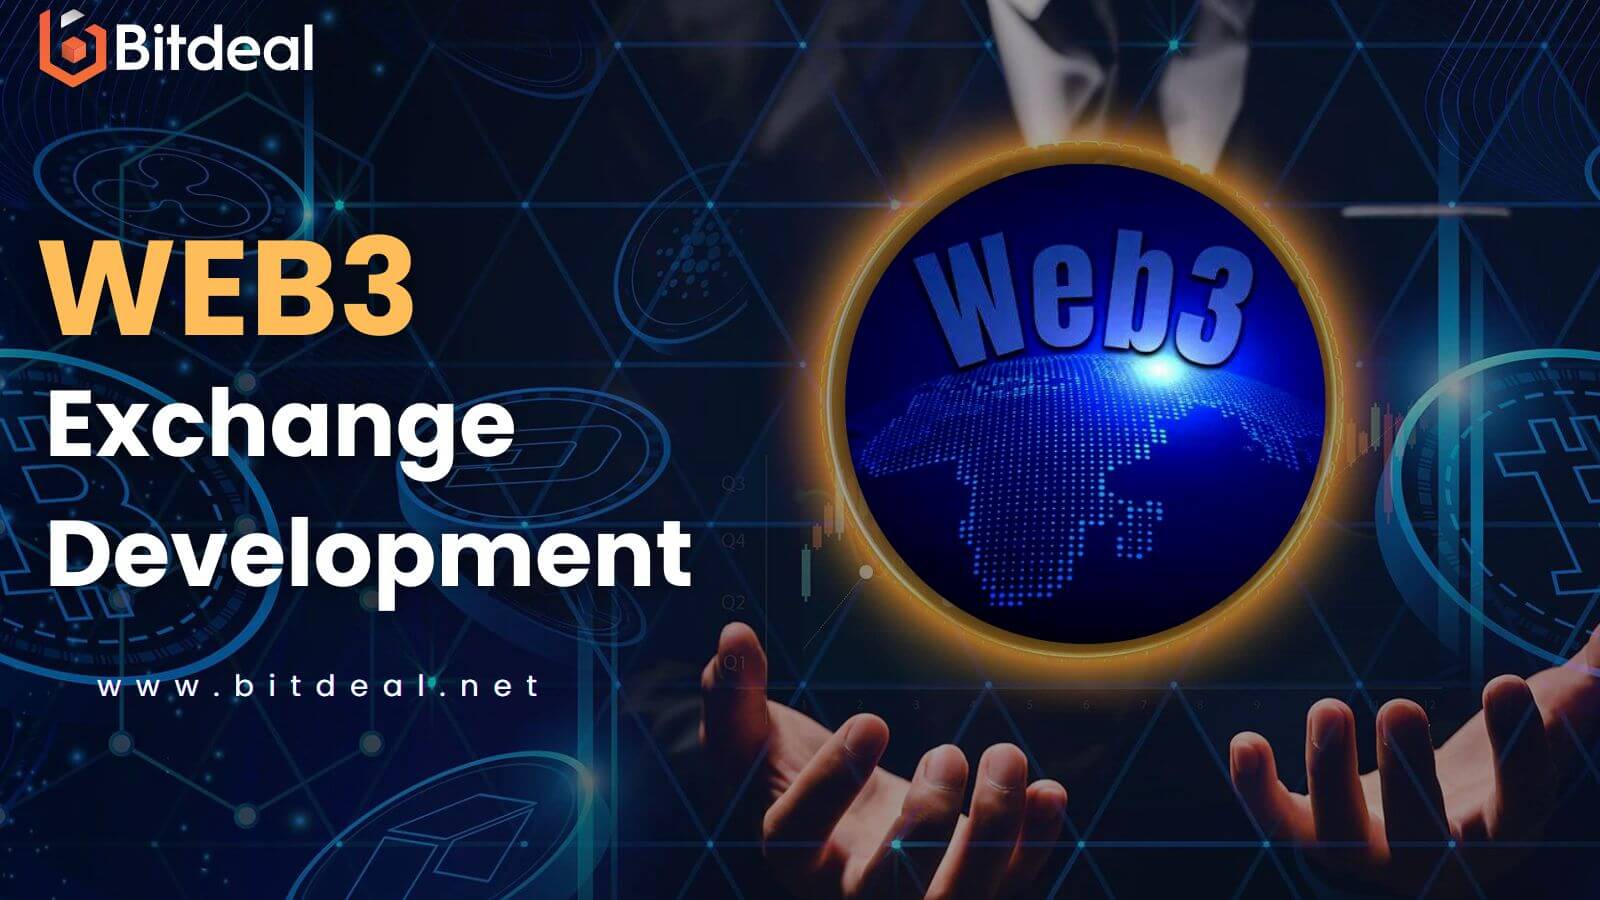 Web3 Exchanges - Make Faster, Secured, and Decentralized Exchange Of Digital Assets